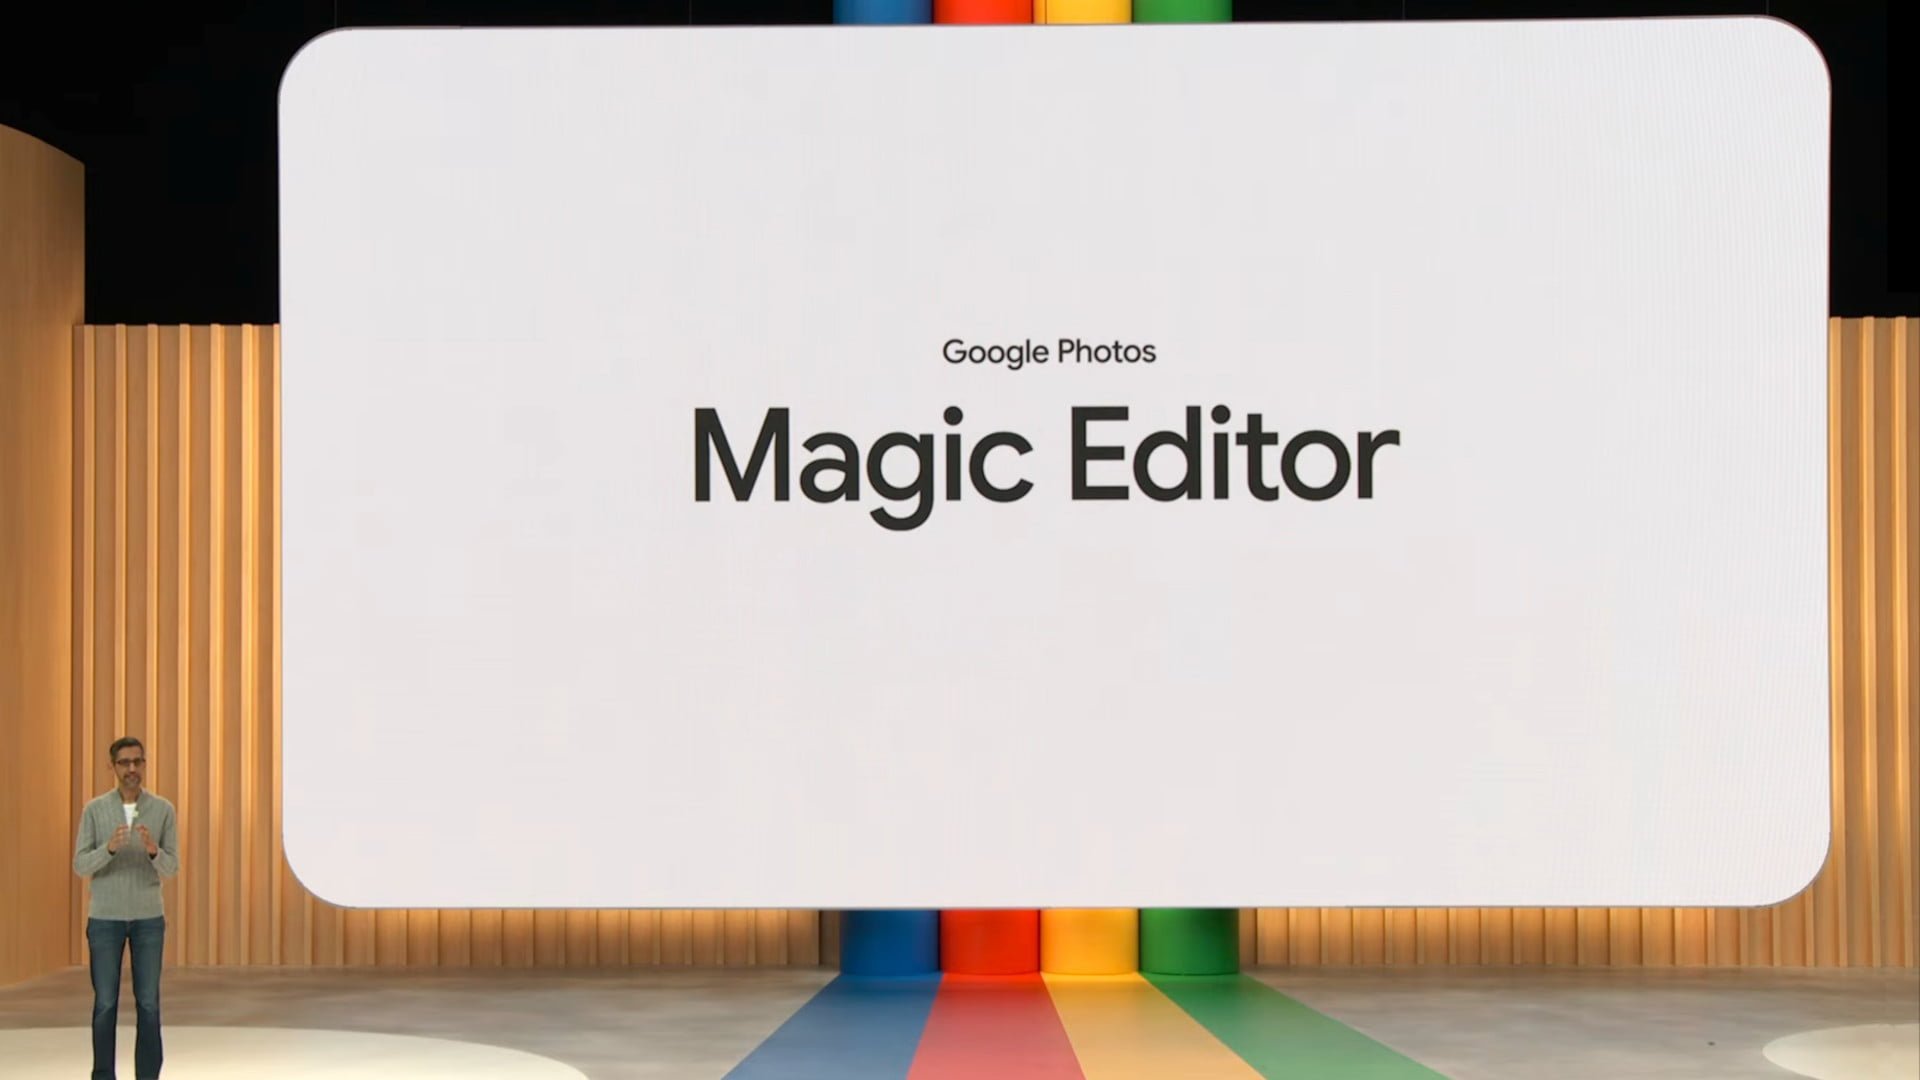 Der Magic Editor in Google Fotos kann keine Gesichter, Dokumente oder große Objekte bearbeiten